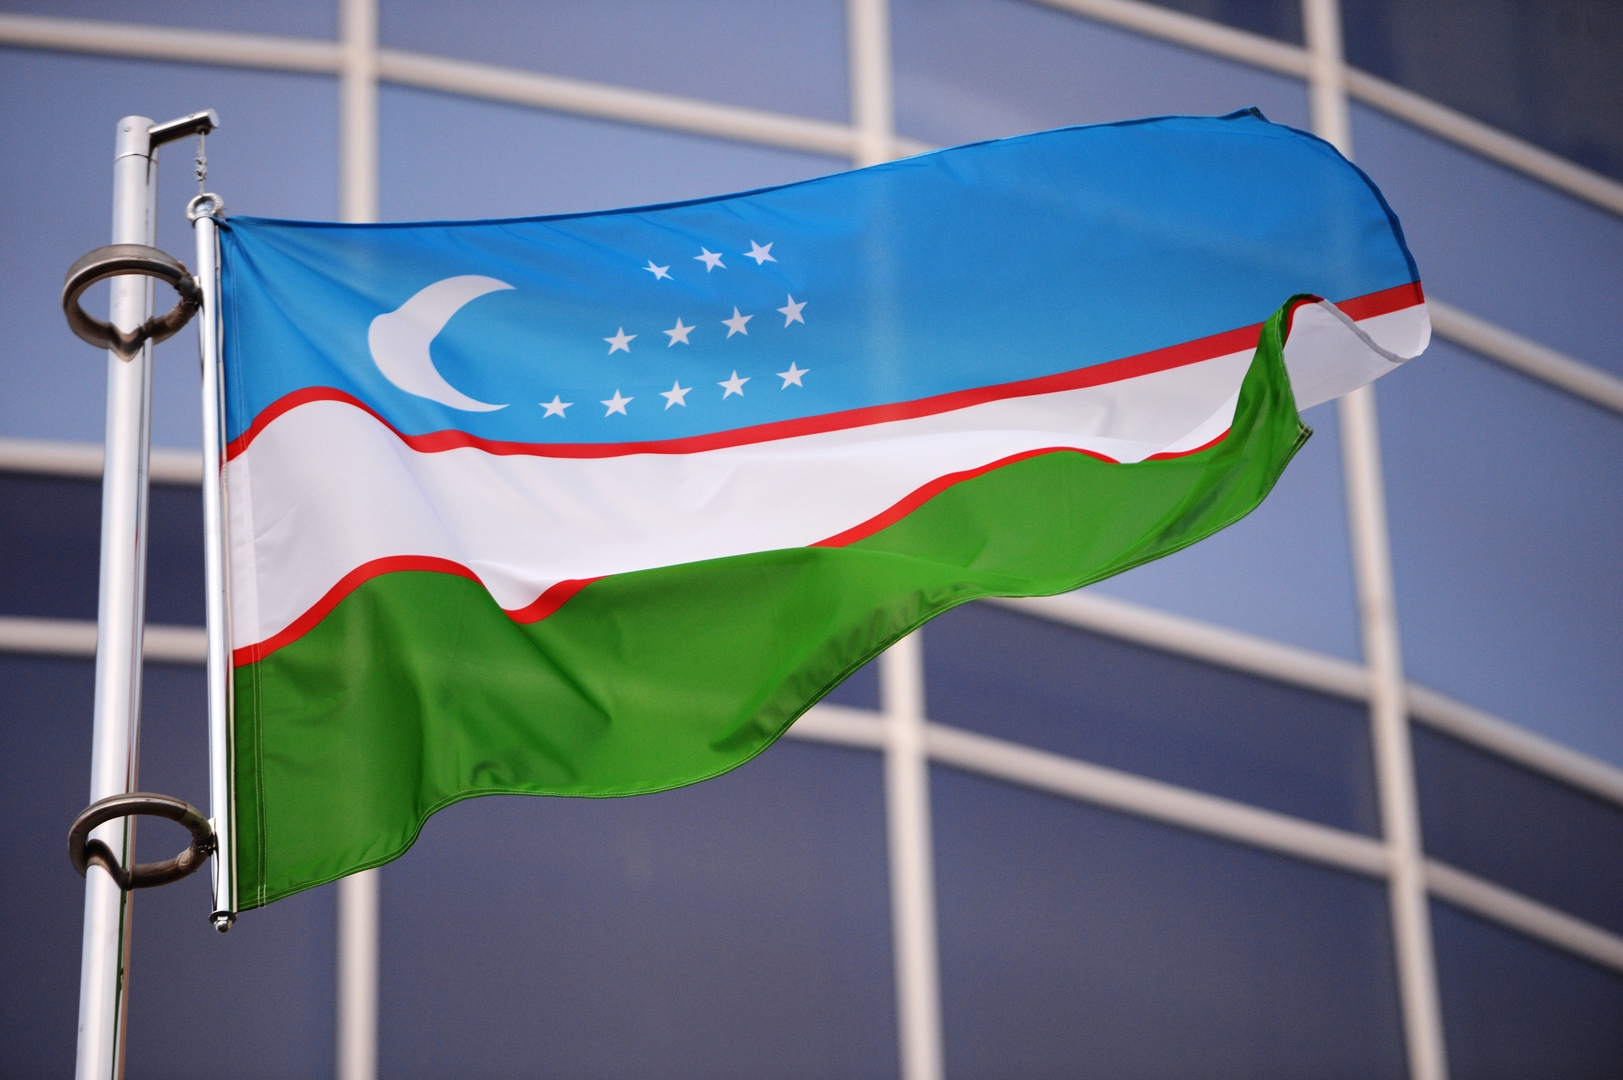 مرسوم رئاسي في أوزبكستان ببدء خصخصة كبريات الشركات العامة في البلاد